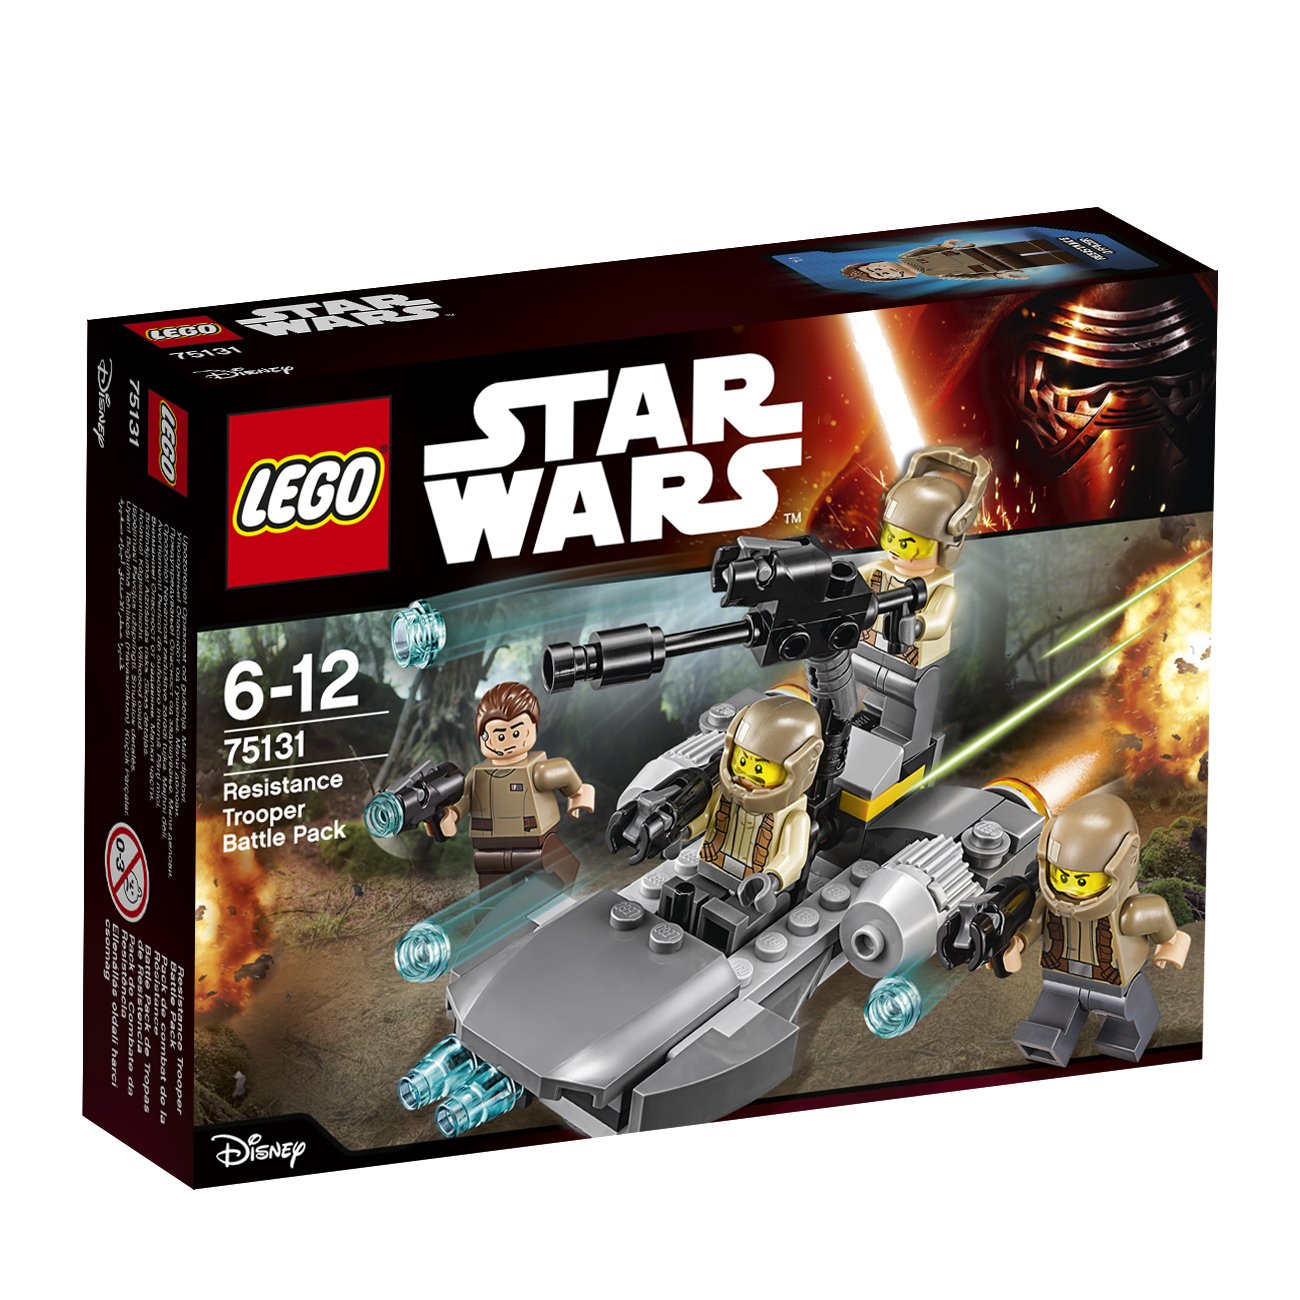 Lego Star Wars Resistance Trooper Battle Pack Building Set